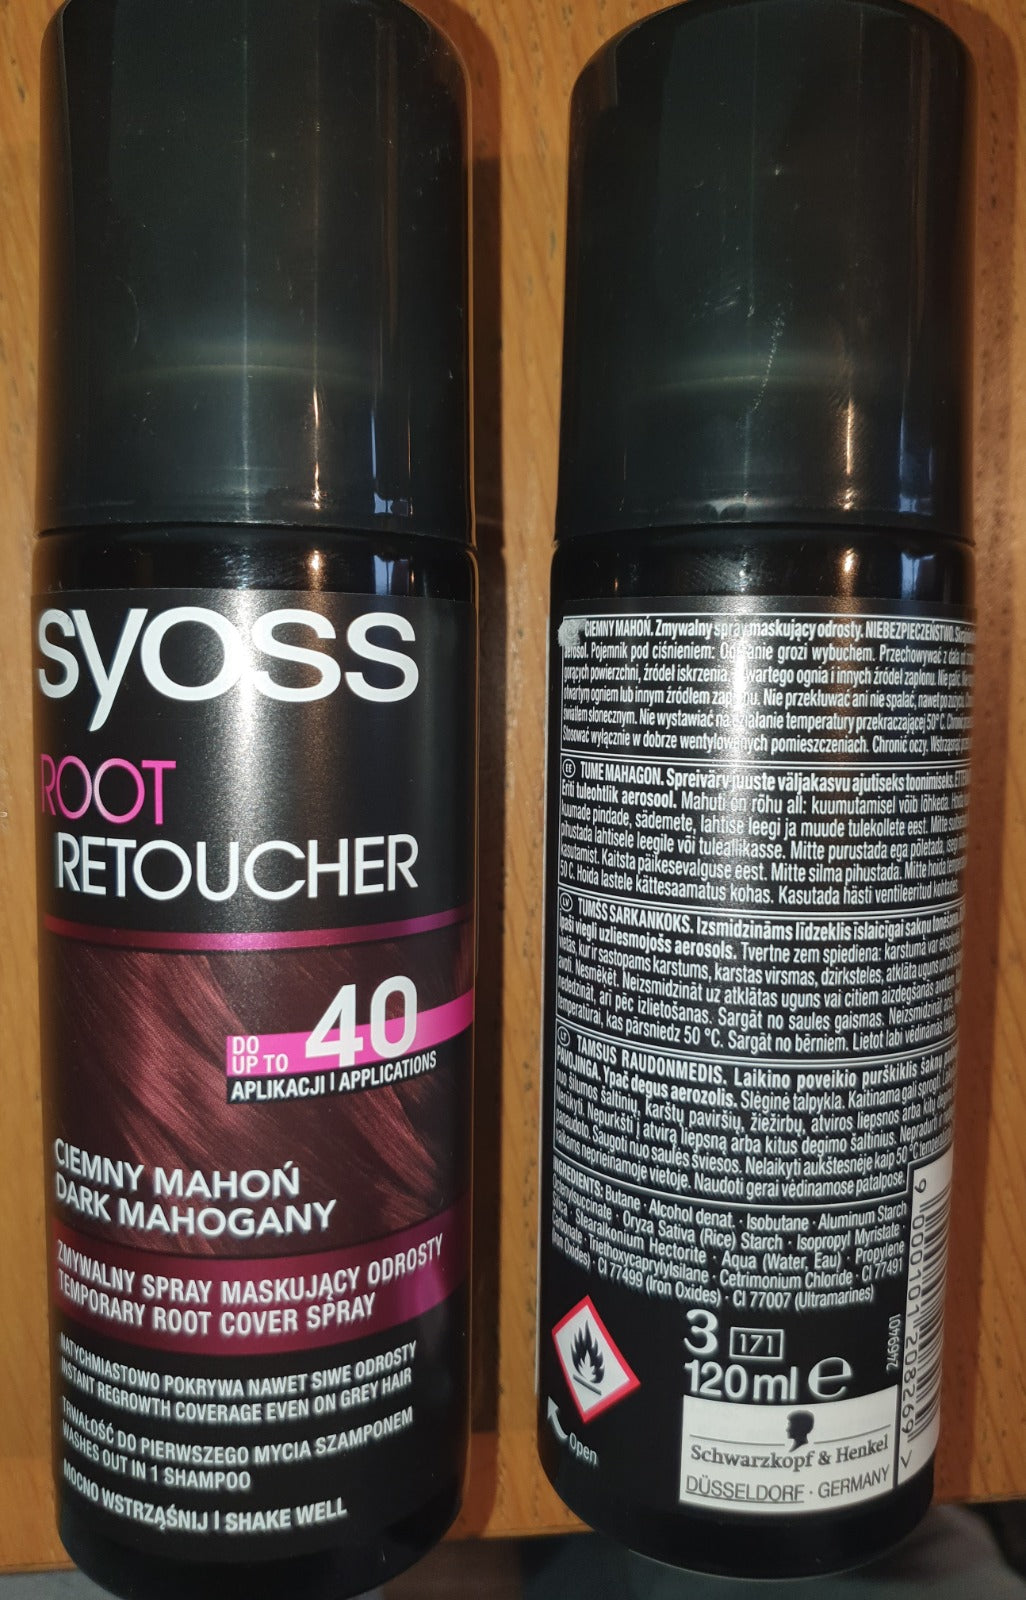 72X SYOSS Root Cover Spray 120ml Dark Mahogany READ DESCRIPTION